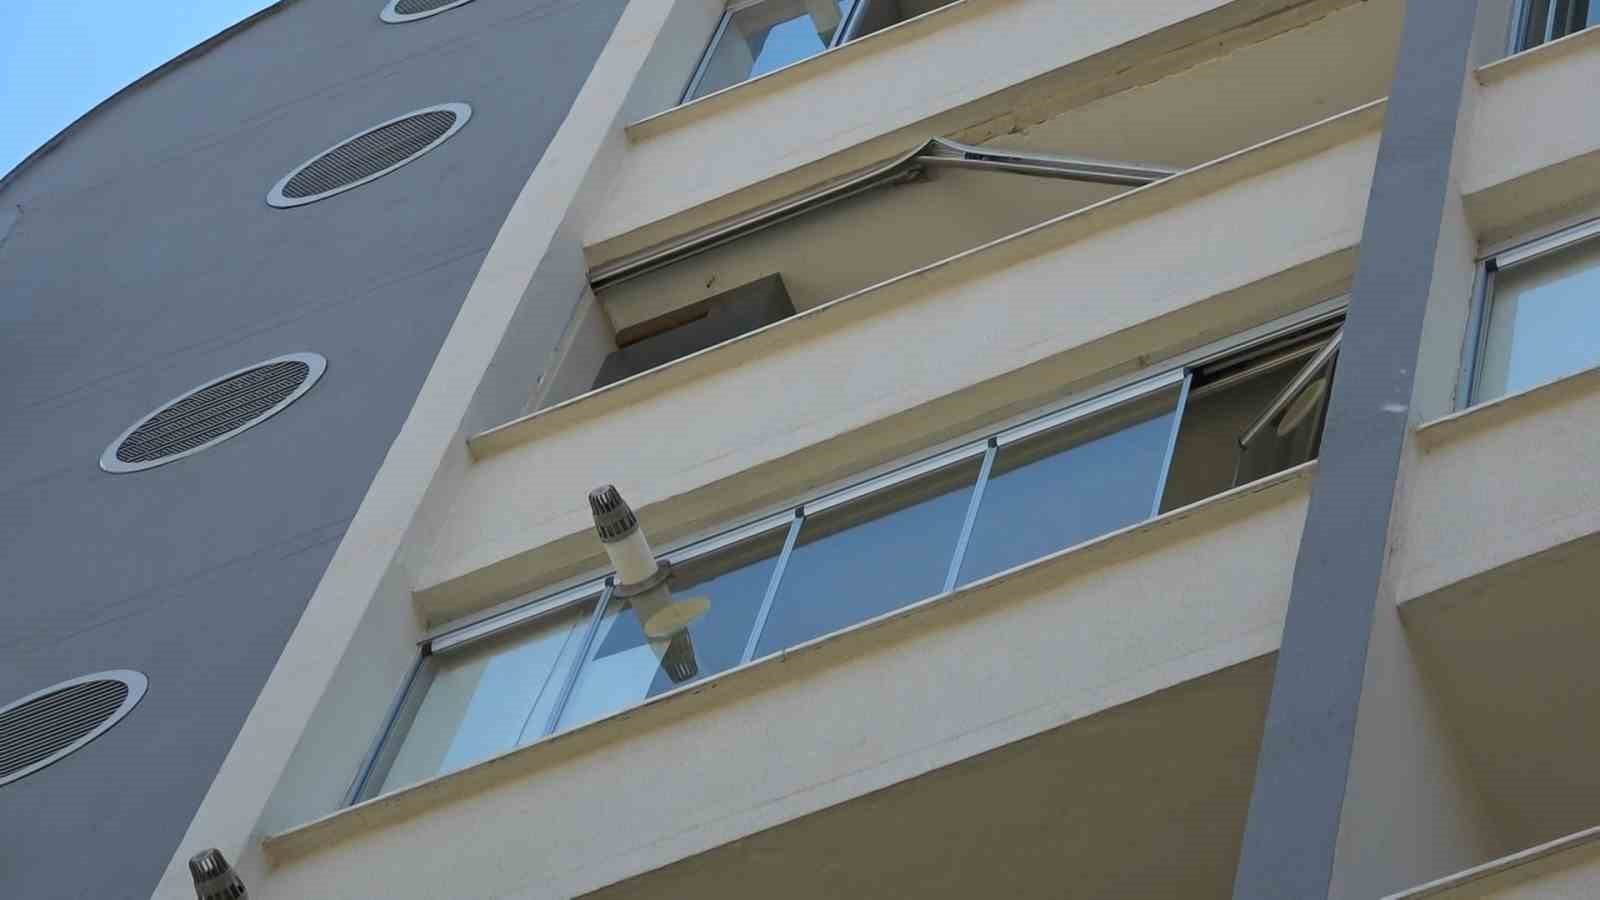 Cam balkon takarken 7. kattan düşen genç hayatını kaybetti